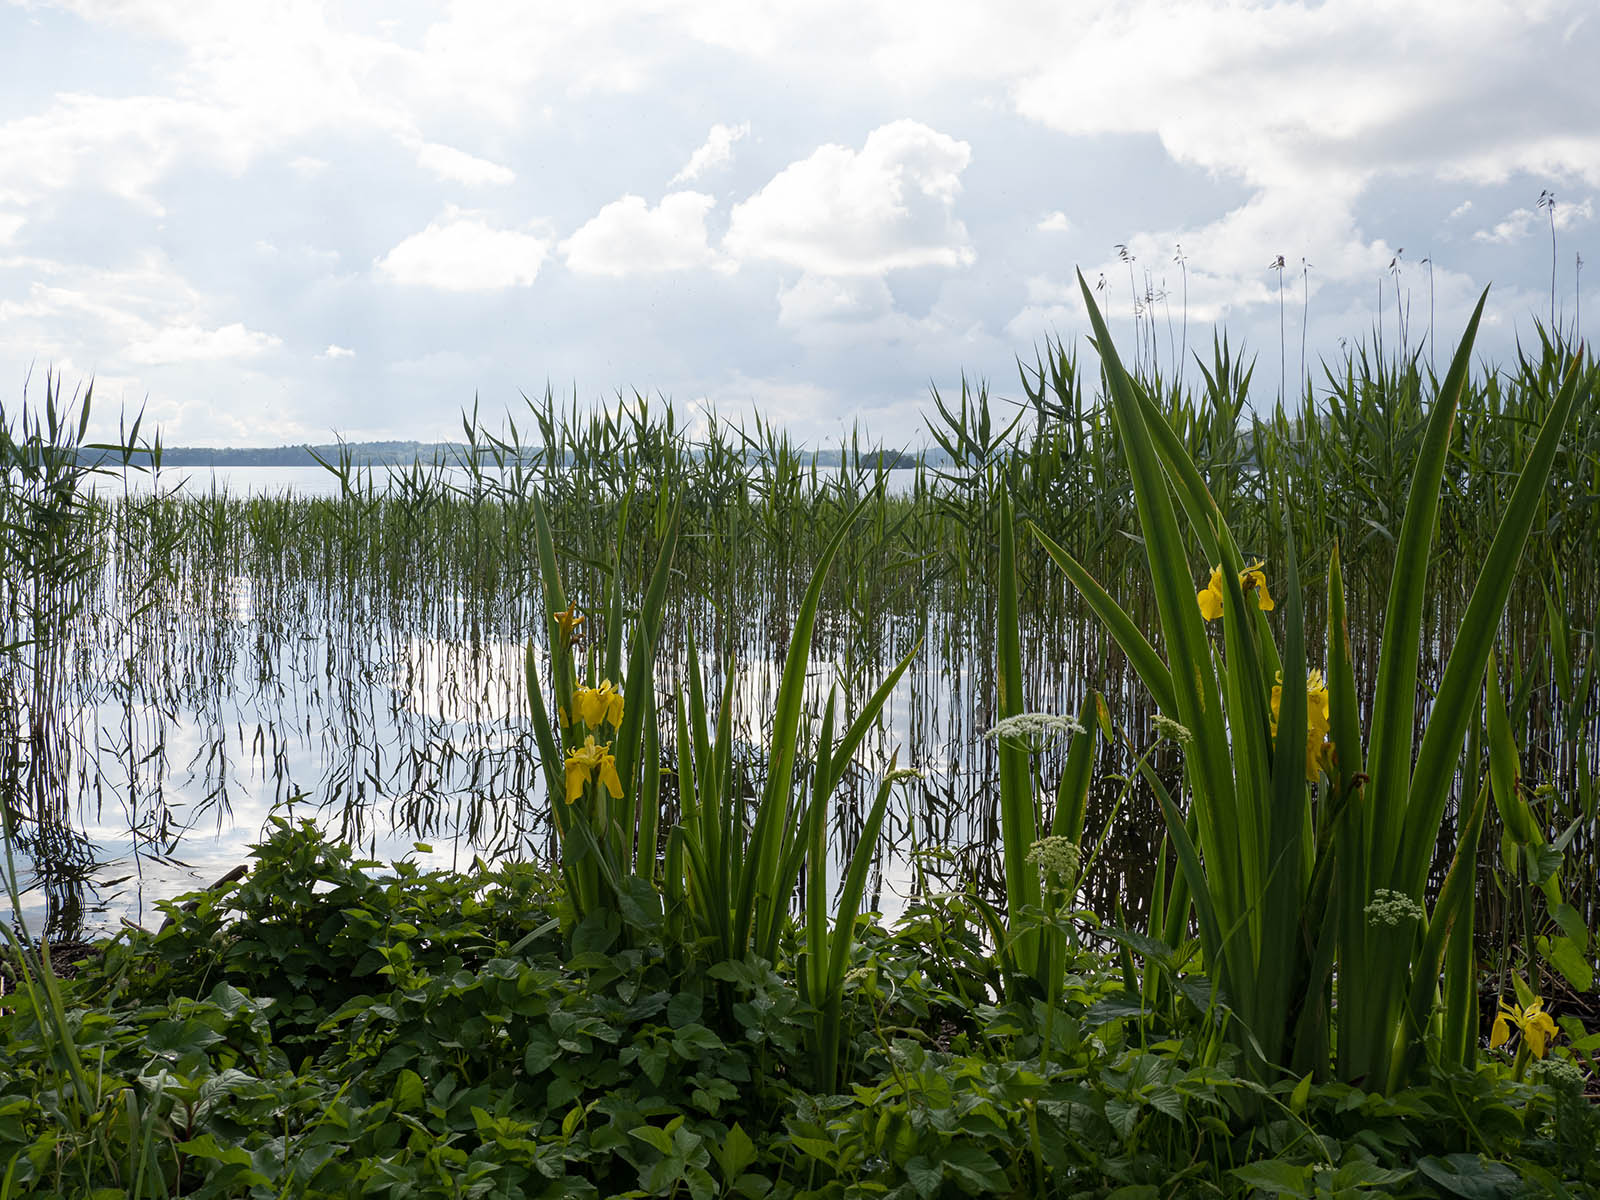 Ирис ложноаировый (Iris pseudacorus)Ирис ложноаировый (Iris pseudacorus) на берегу озера M?laren, Стокгольм, июнь 2020 года. Автор фото: Сутормина Марина